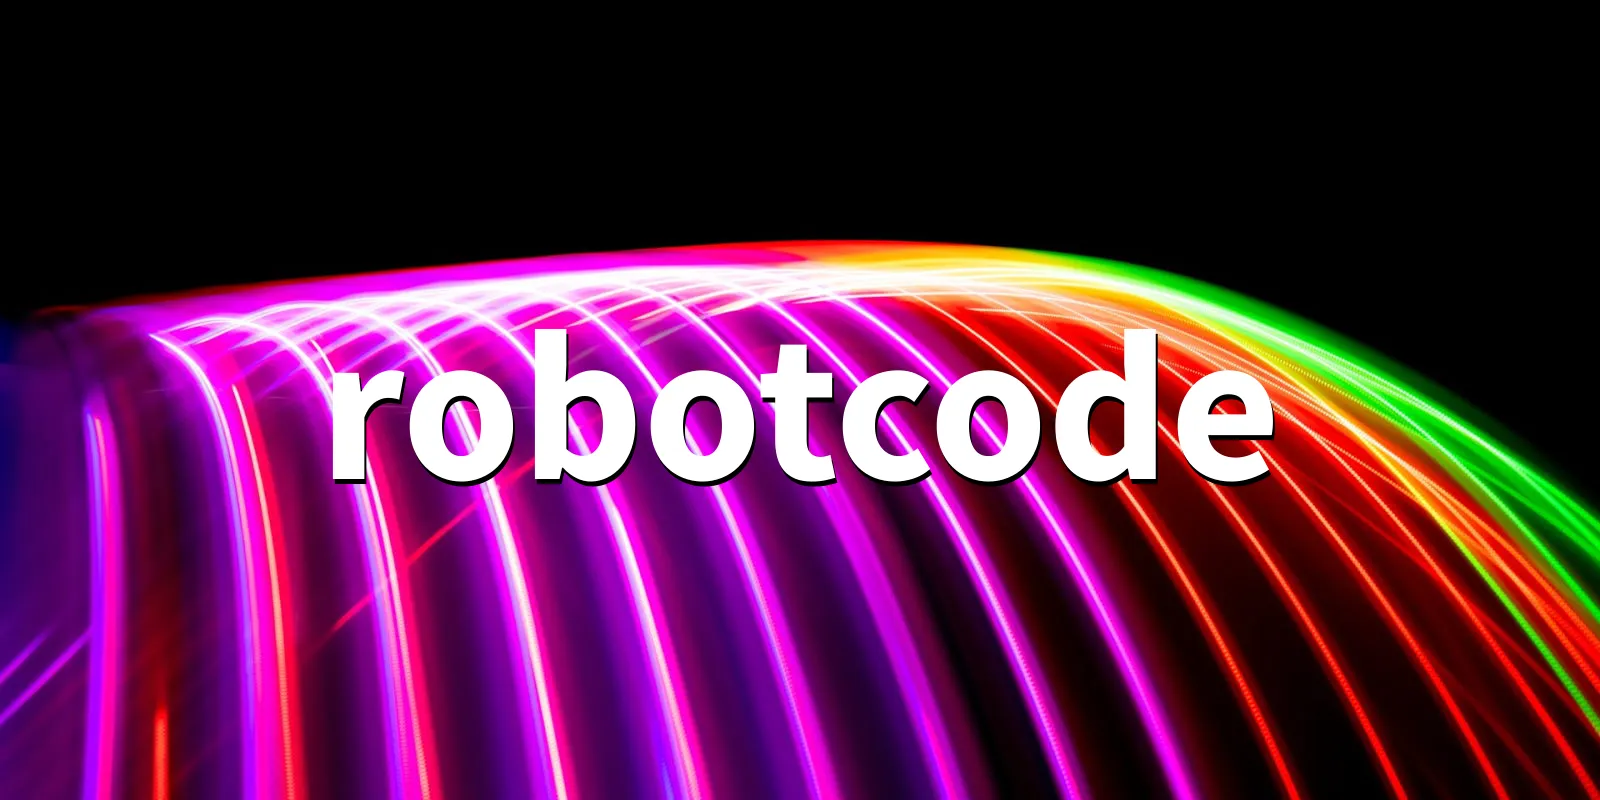 /pkg/r/robotcode/robotcode-banner.webp